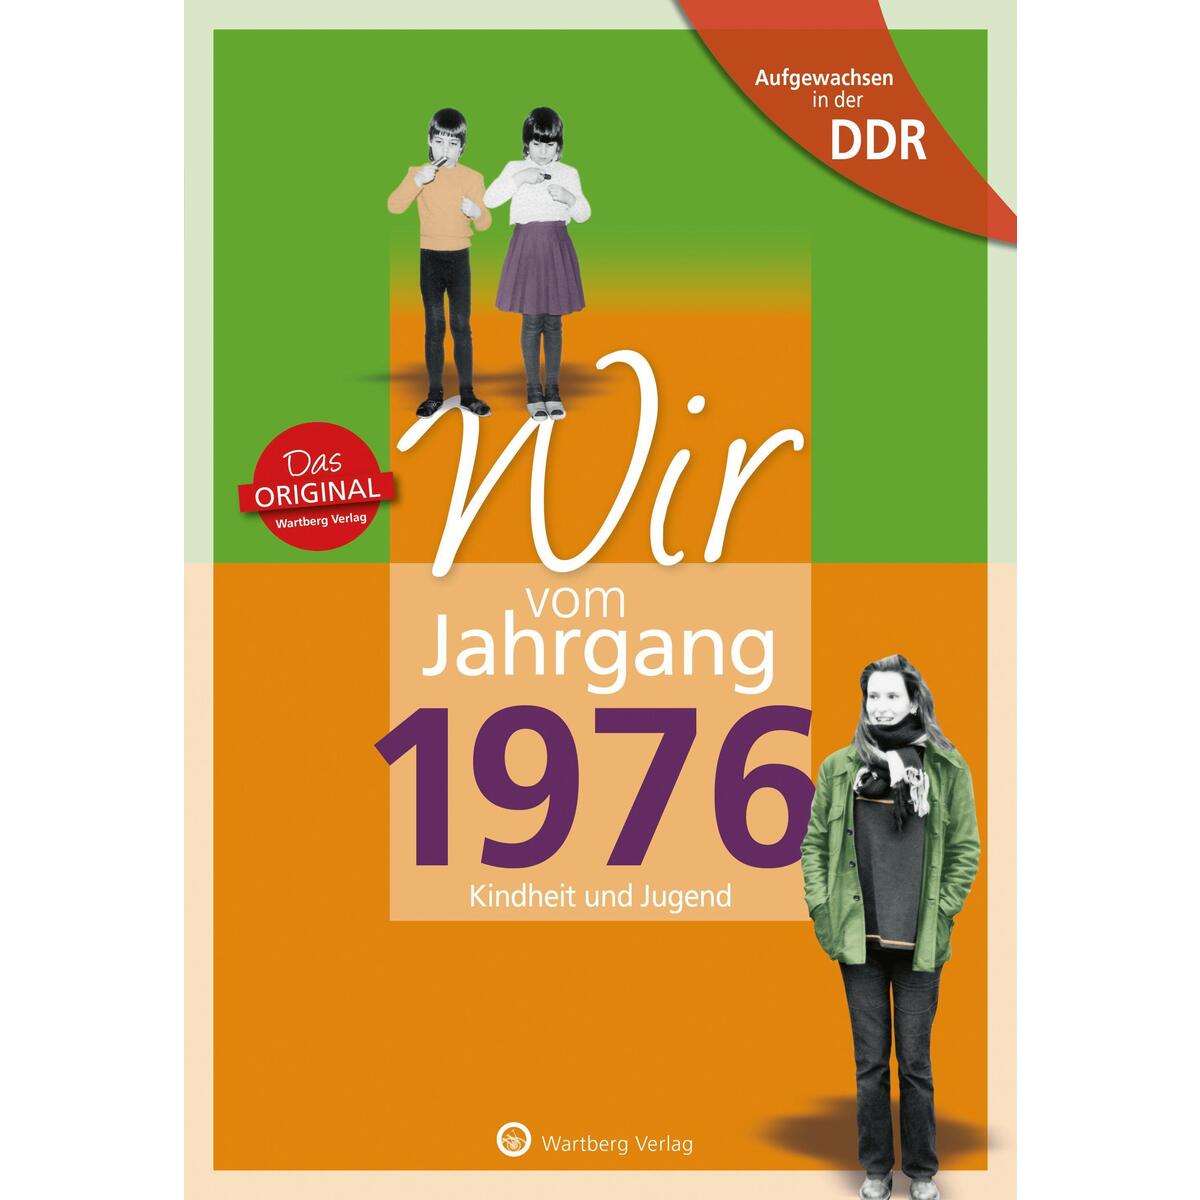 Aufgewachsen in der DDR - Wir vom Jahrgang 1976 - Kindheit und Jugend von Wartberg Verlag